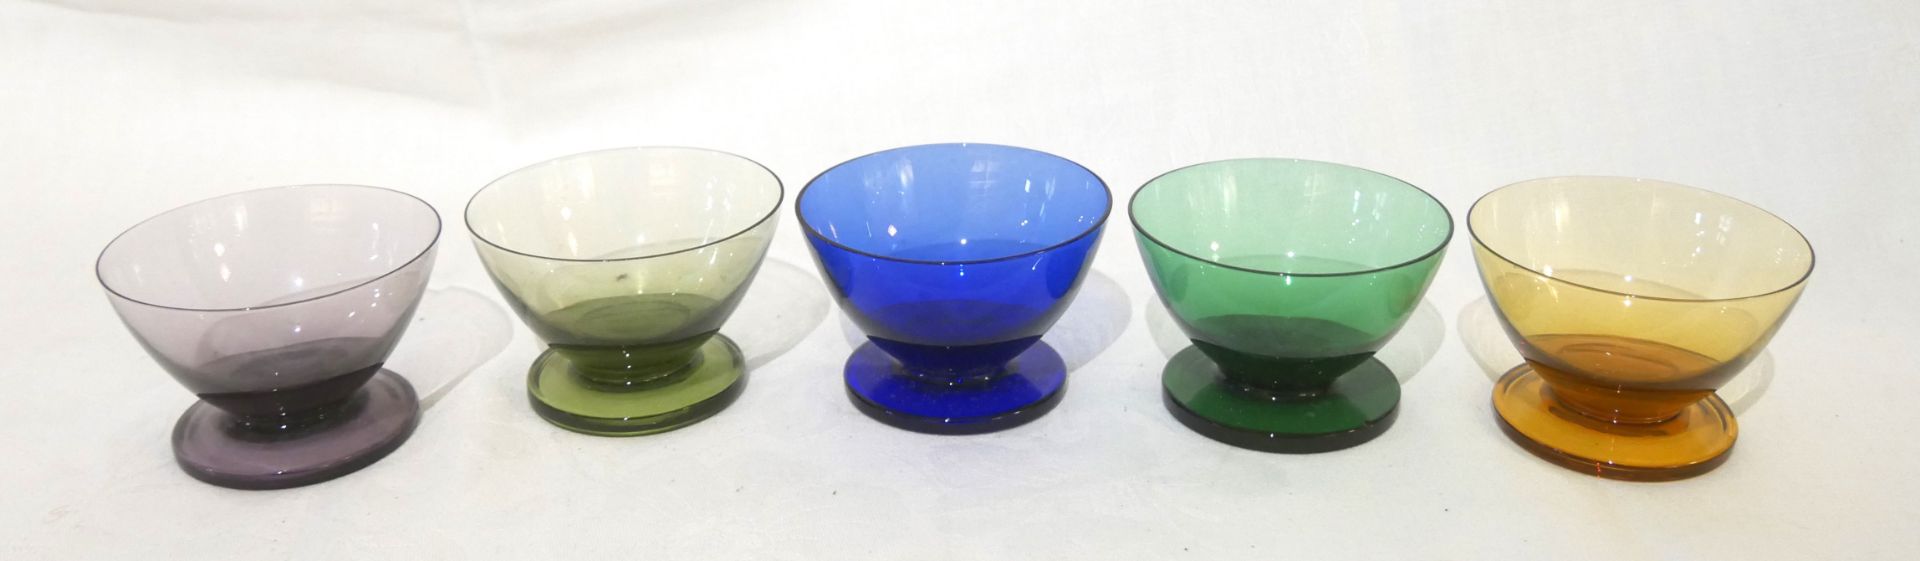 5 farbige Glas Dessertschälchen, 50/60er Jahre. Durchmesser ca. 8,5 cm, Höhe ca. 5,5 cm